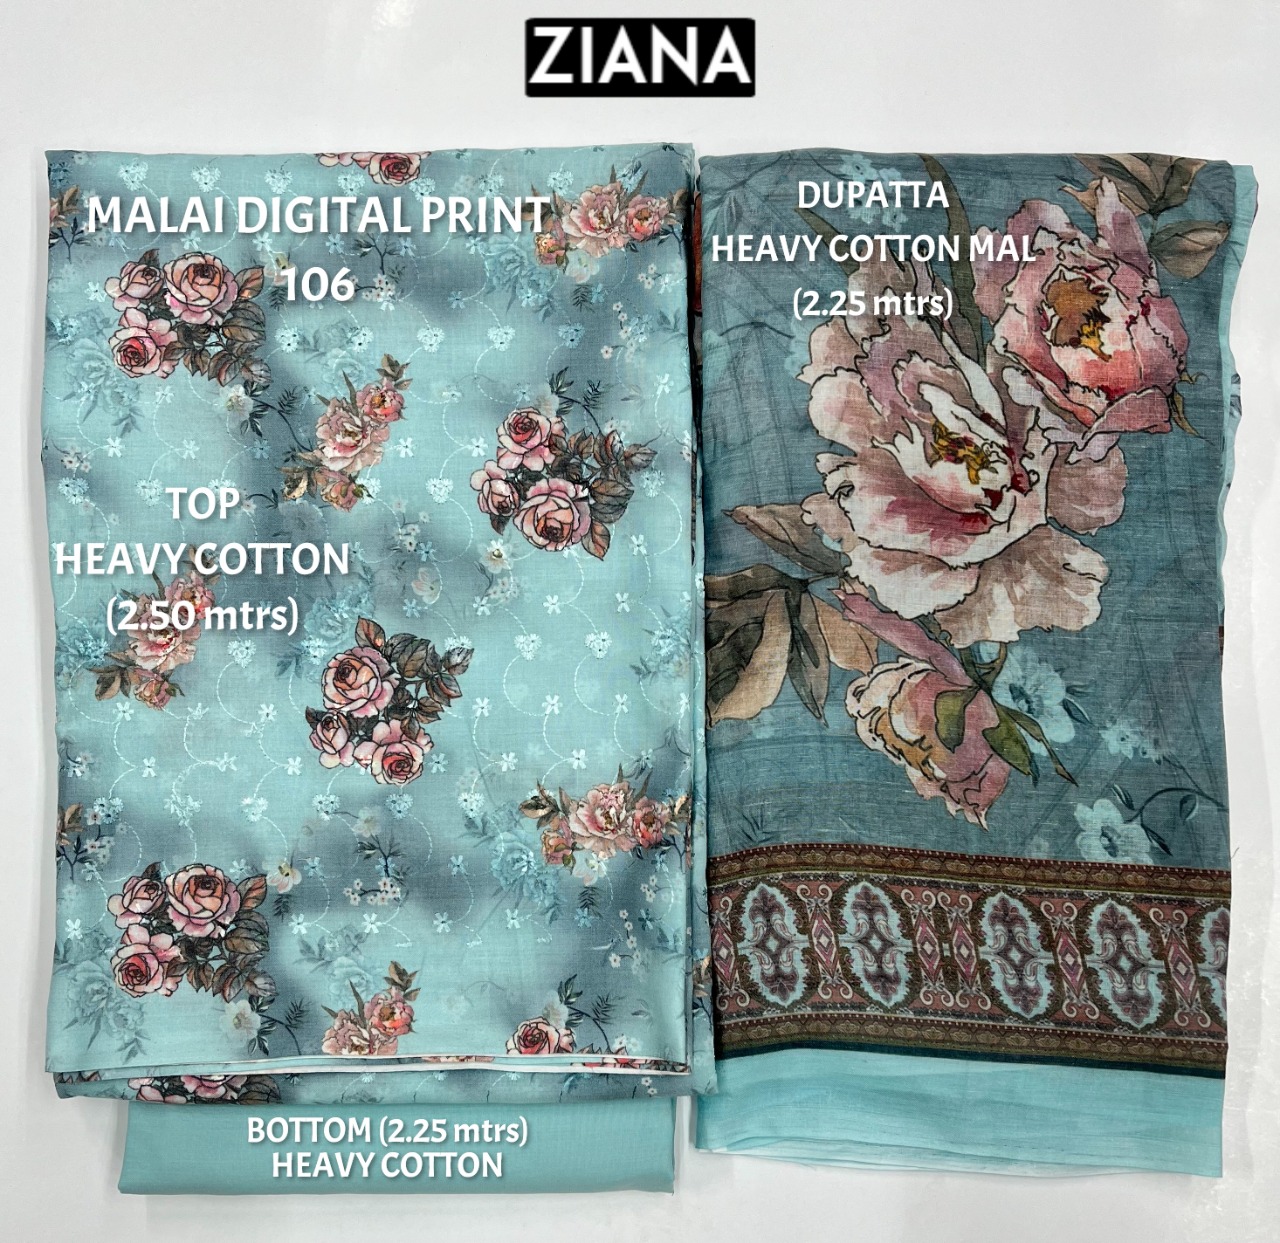 ziana malai digital 106 cotton authentic fabric salwar suit colour set